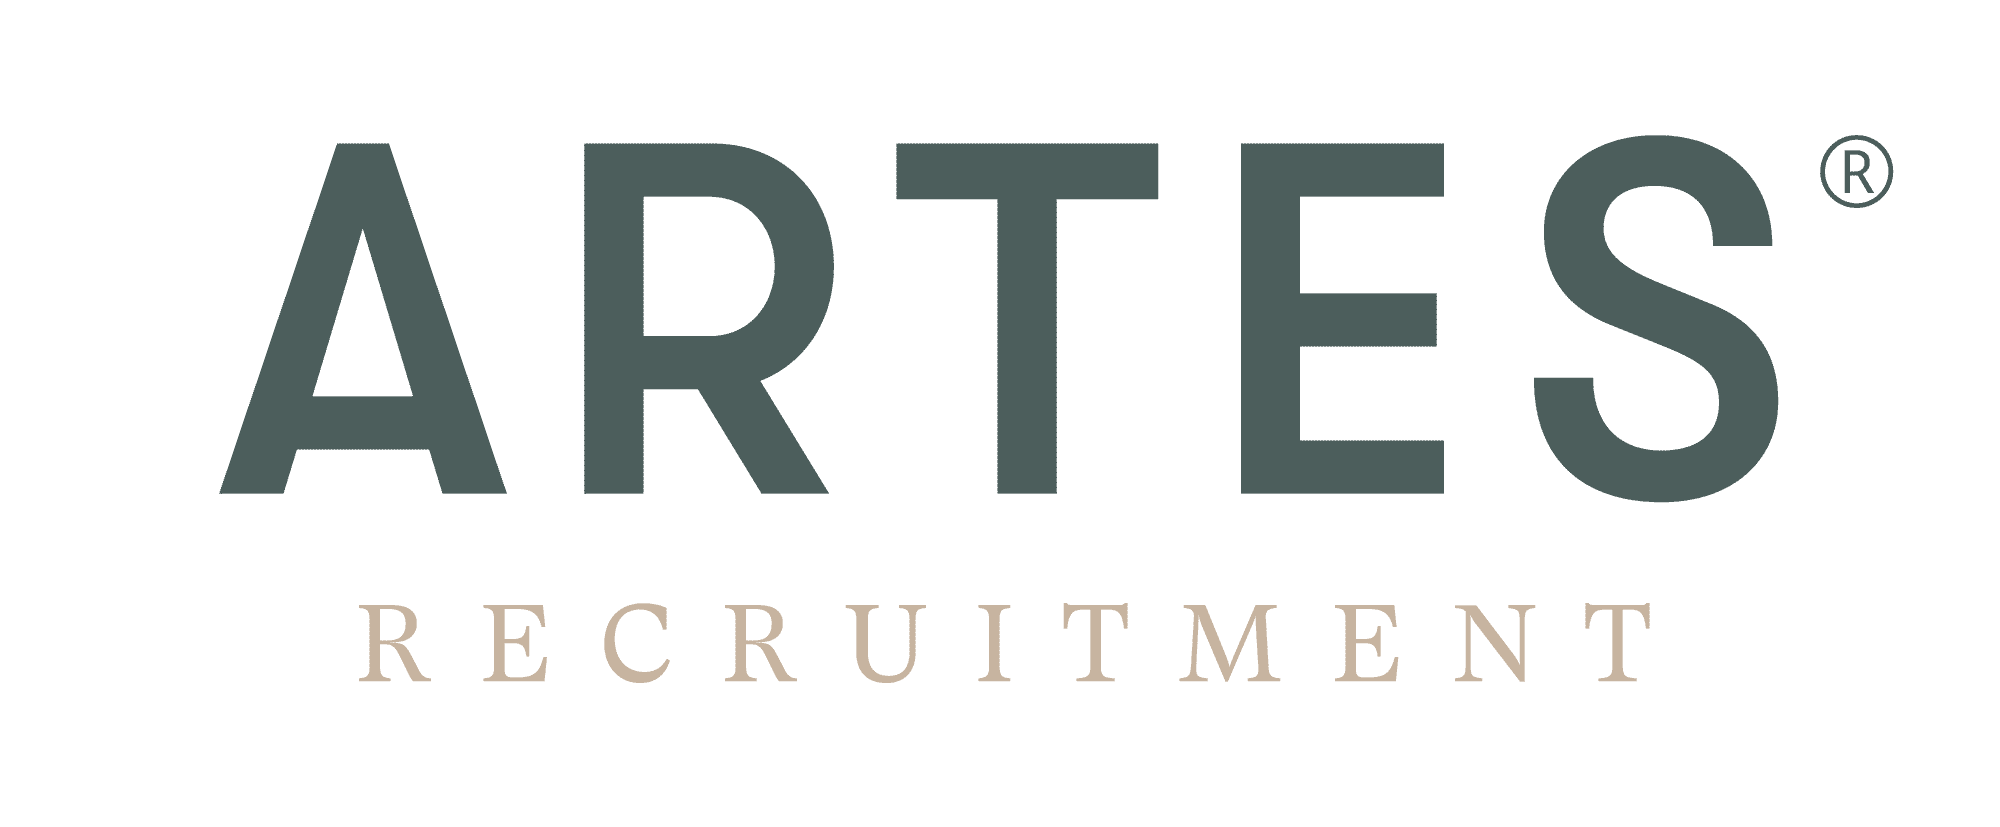 (c) Artes-recruitment.com